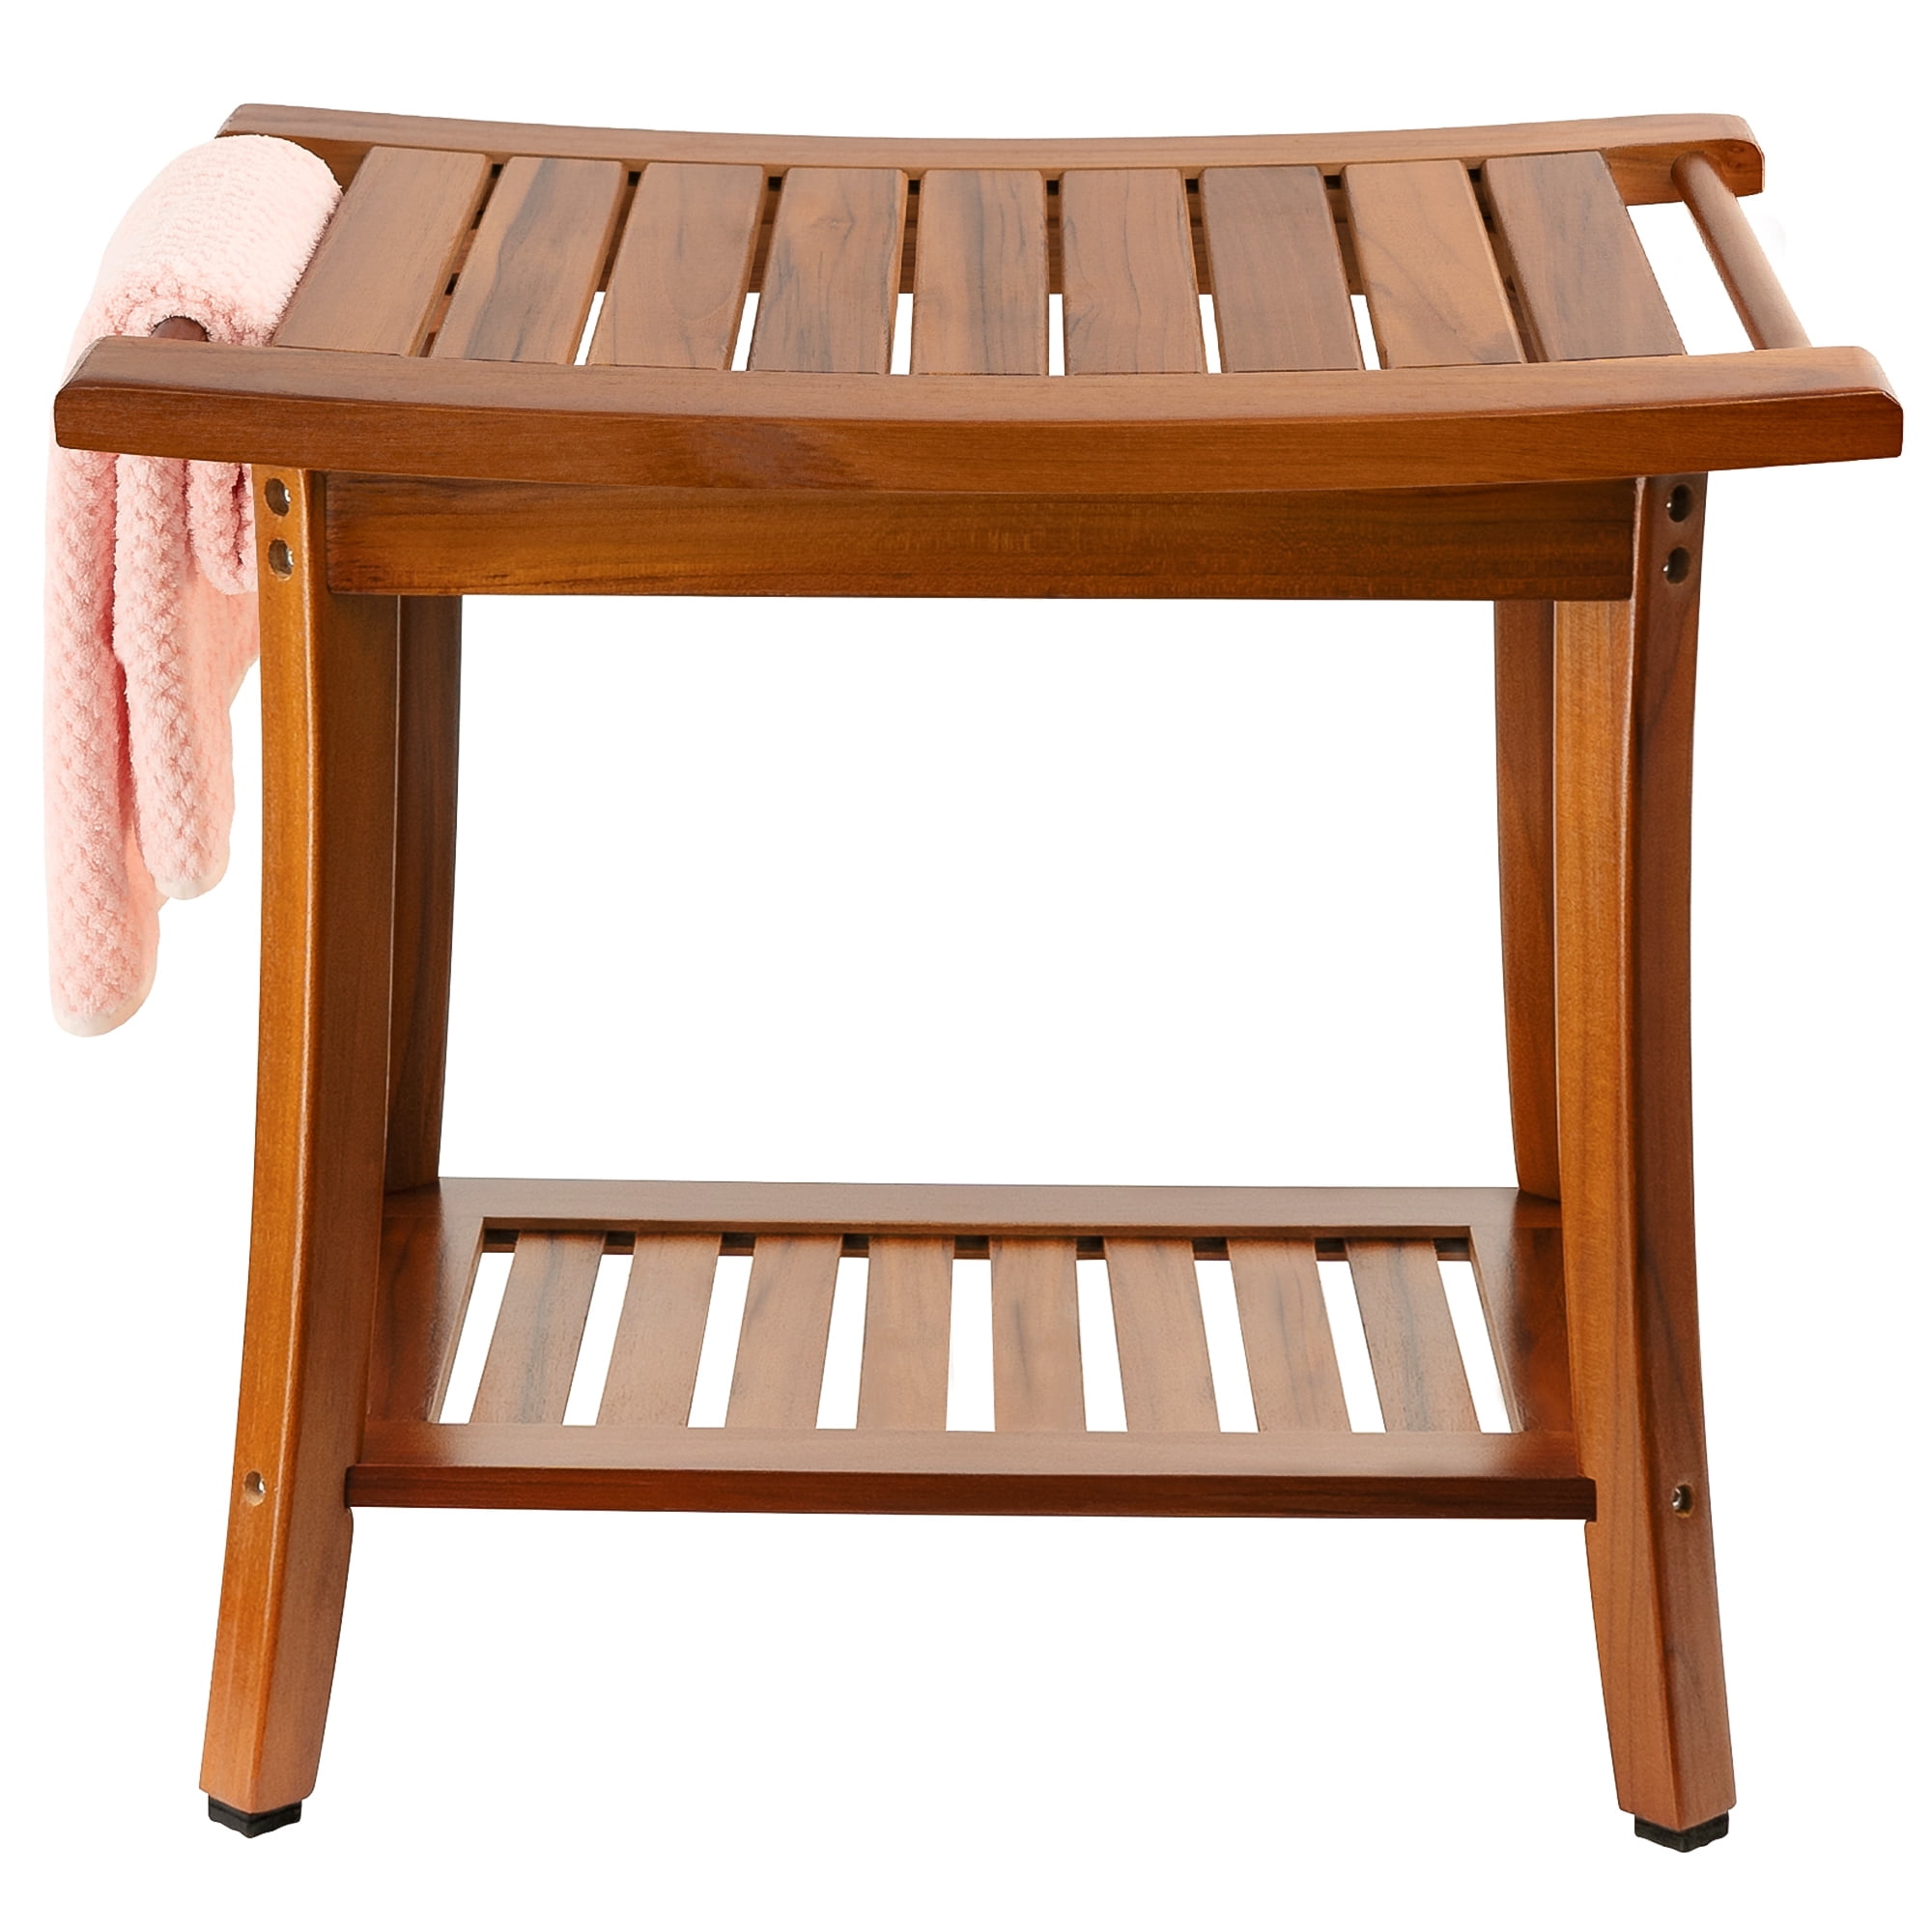 Teak Solid Wood Shower Bench Shelf Bath Seat Chair Spa Indoor Outdoor Bathroom 